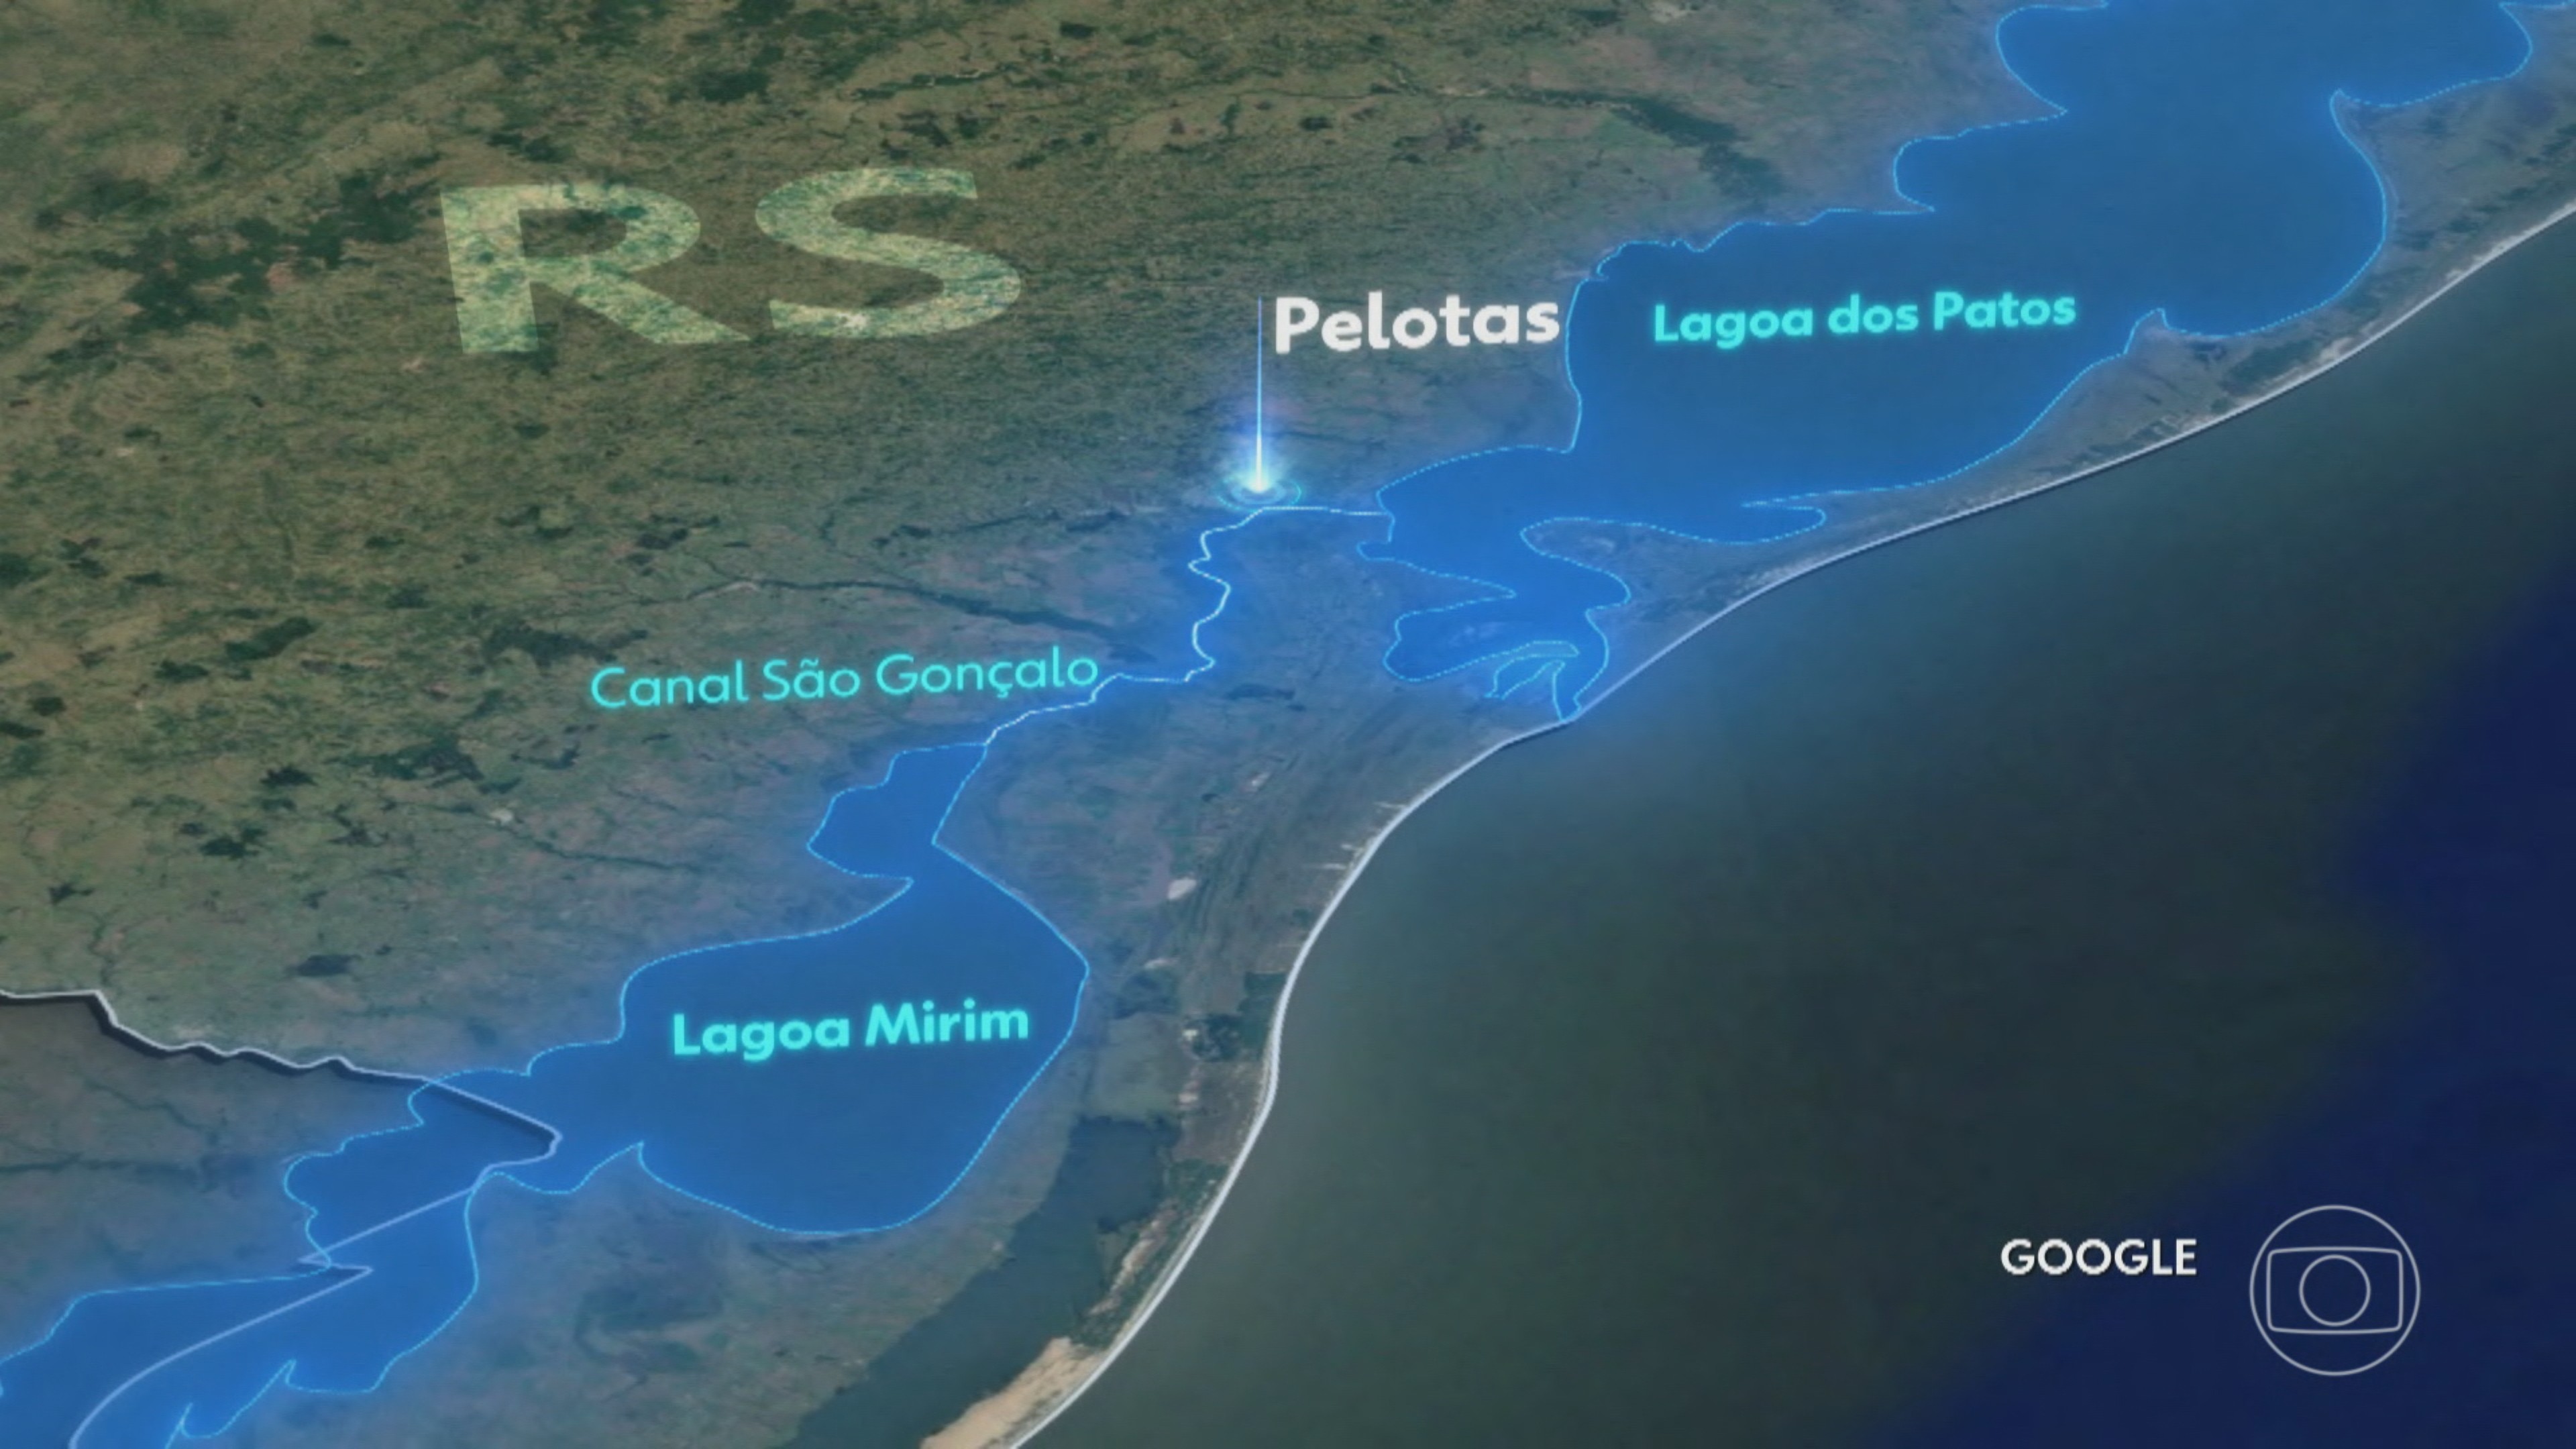 Pelotas (RS) decreta estado de calamidade pública por causa da cheia da Lagoa dos Patos e do Canal São Gonçalo